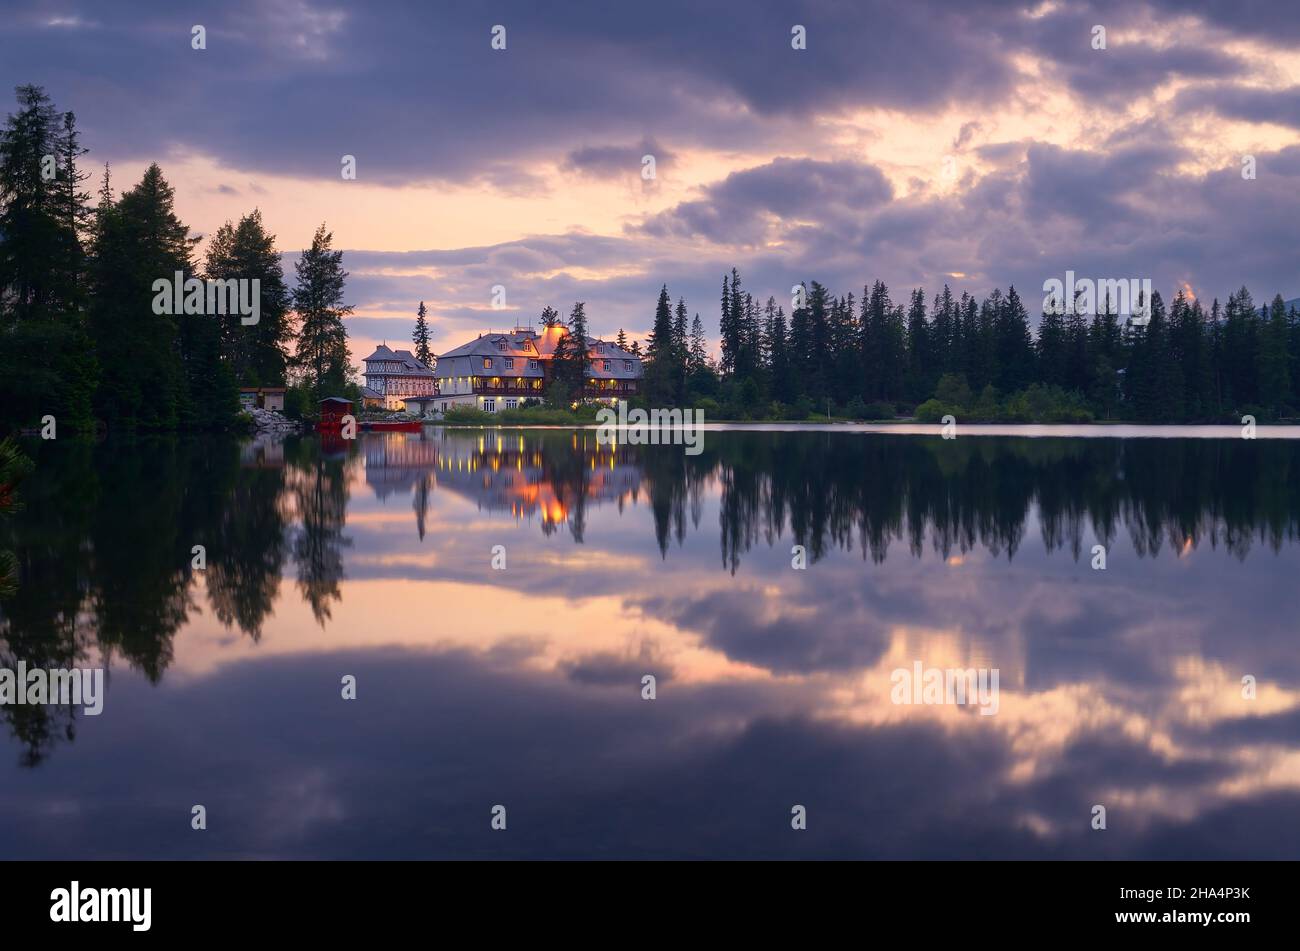 SLOVAQUIE, SHTRBSVE PLESO - JUIN 28 : les lumières de l'hôtel Solisko se reflètent dans le lac Strbske Pleso, Slovaquie, juin 28 Banque D'Images